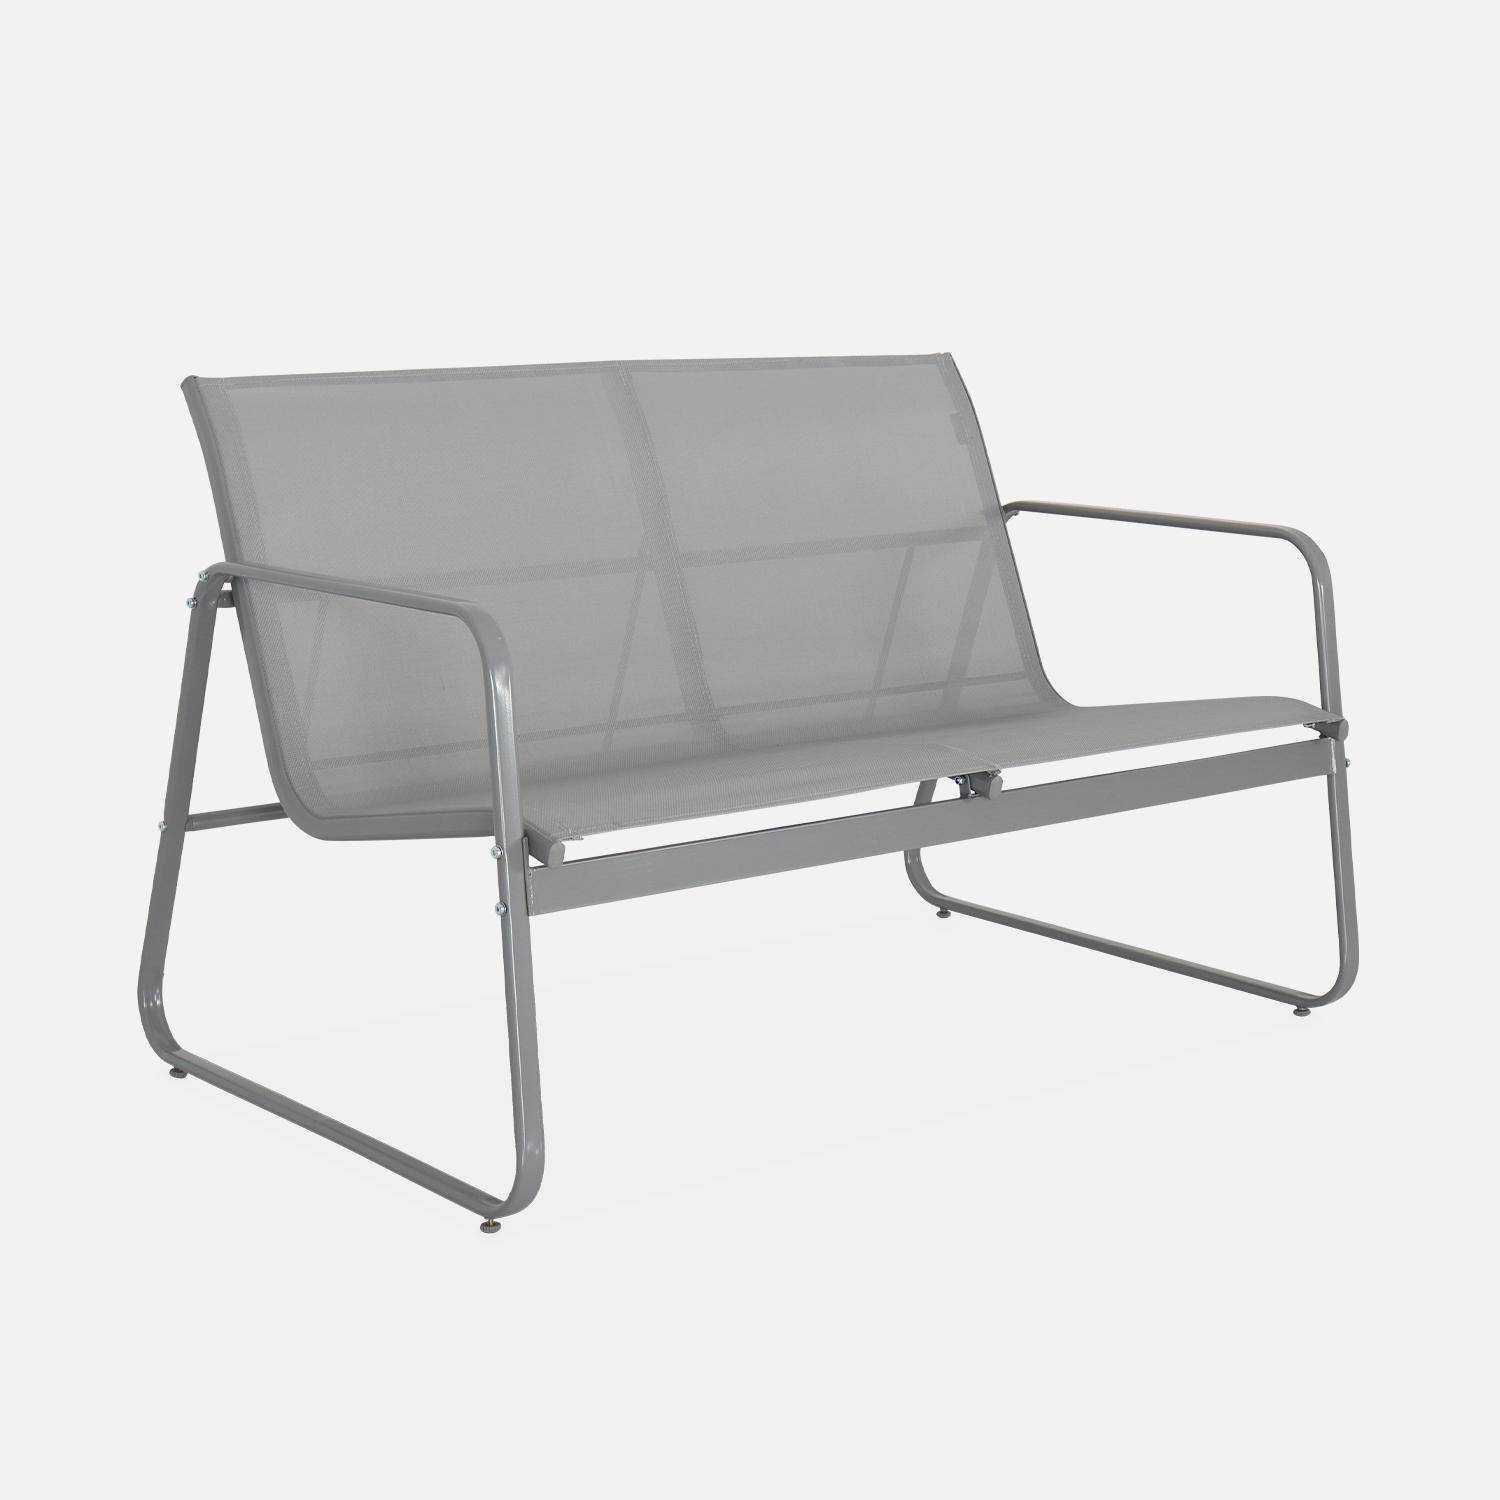 Mobiliário de jardim metálico e textileno para 4 pessoas, cinza claro, design   Photo4